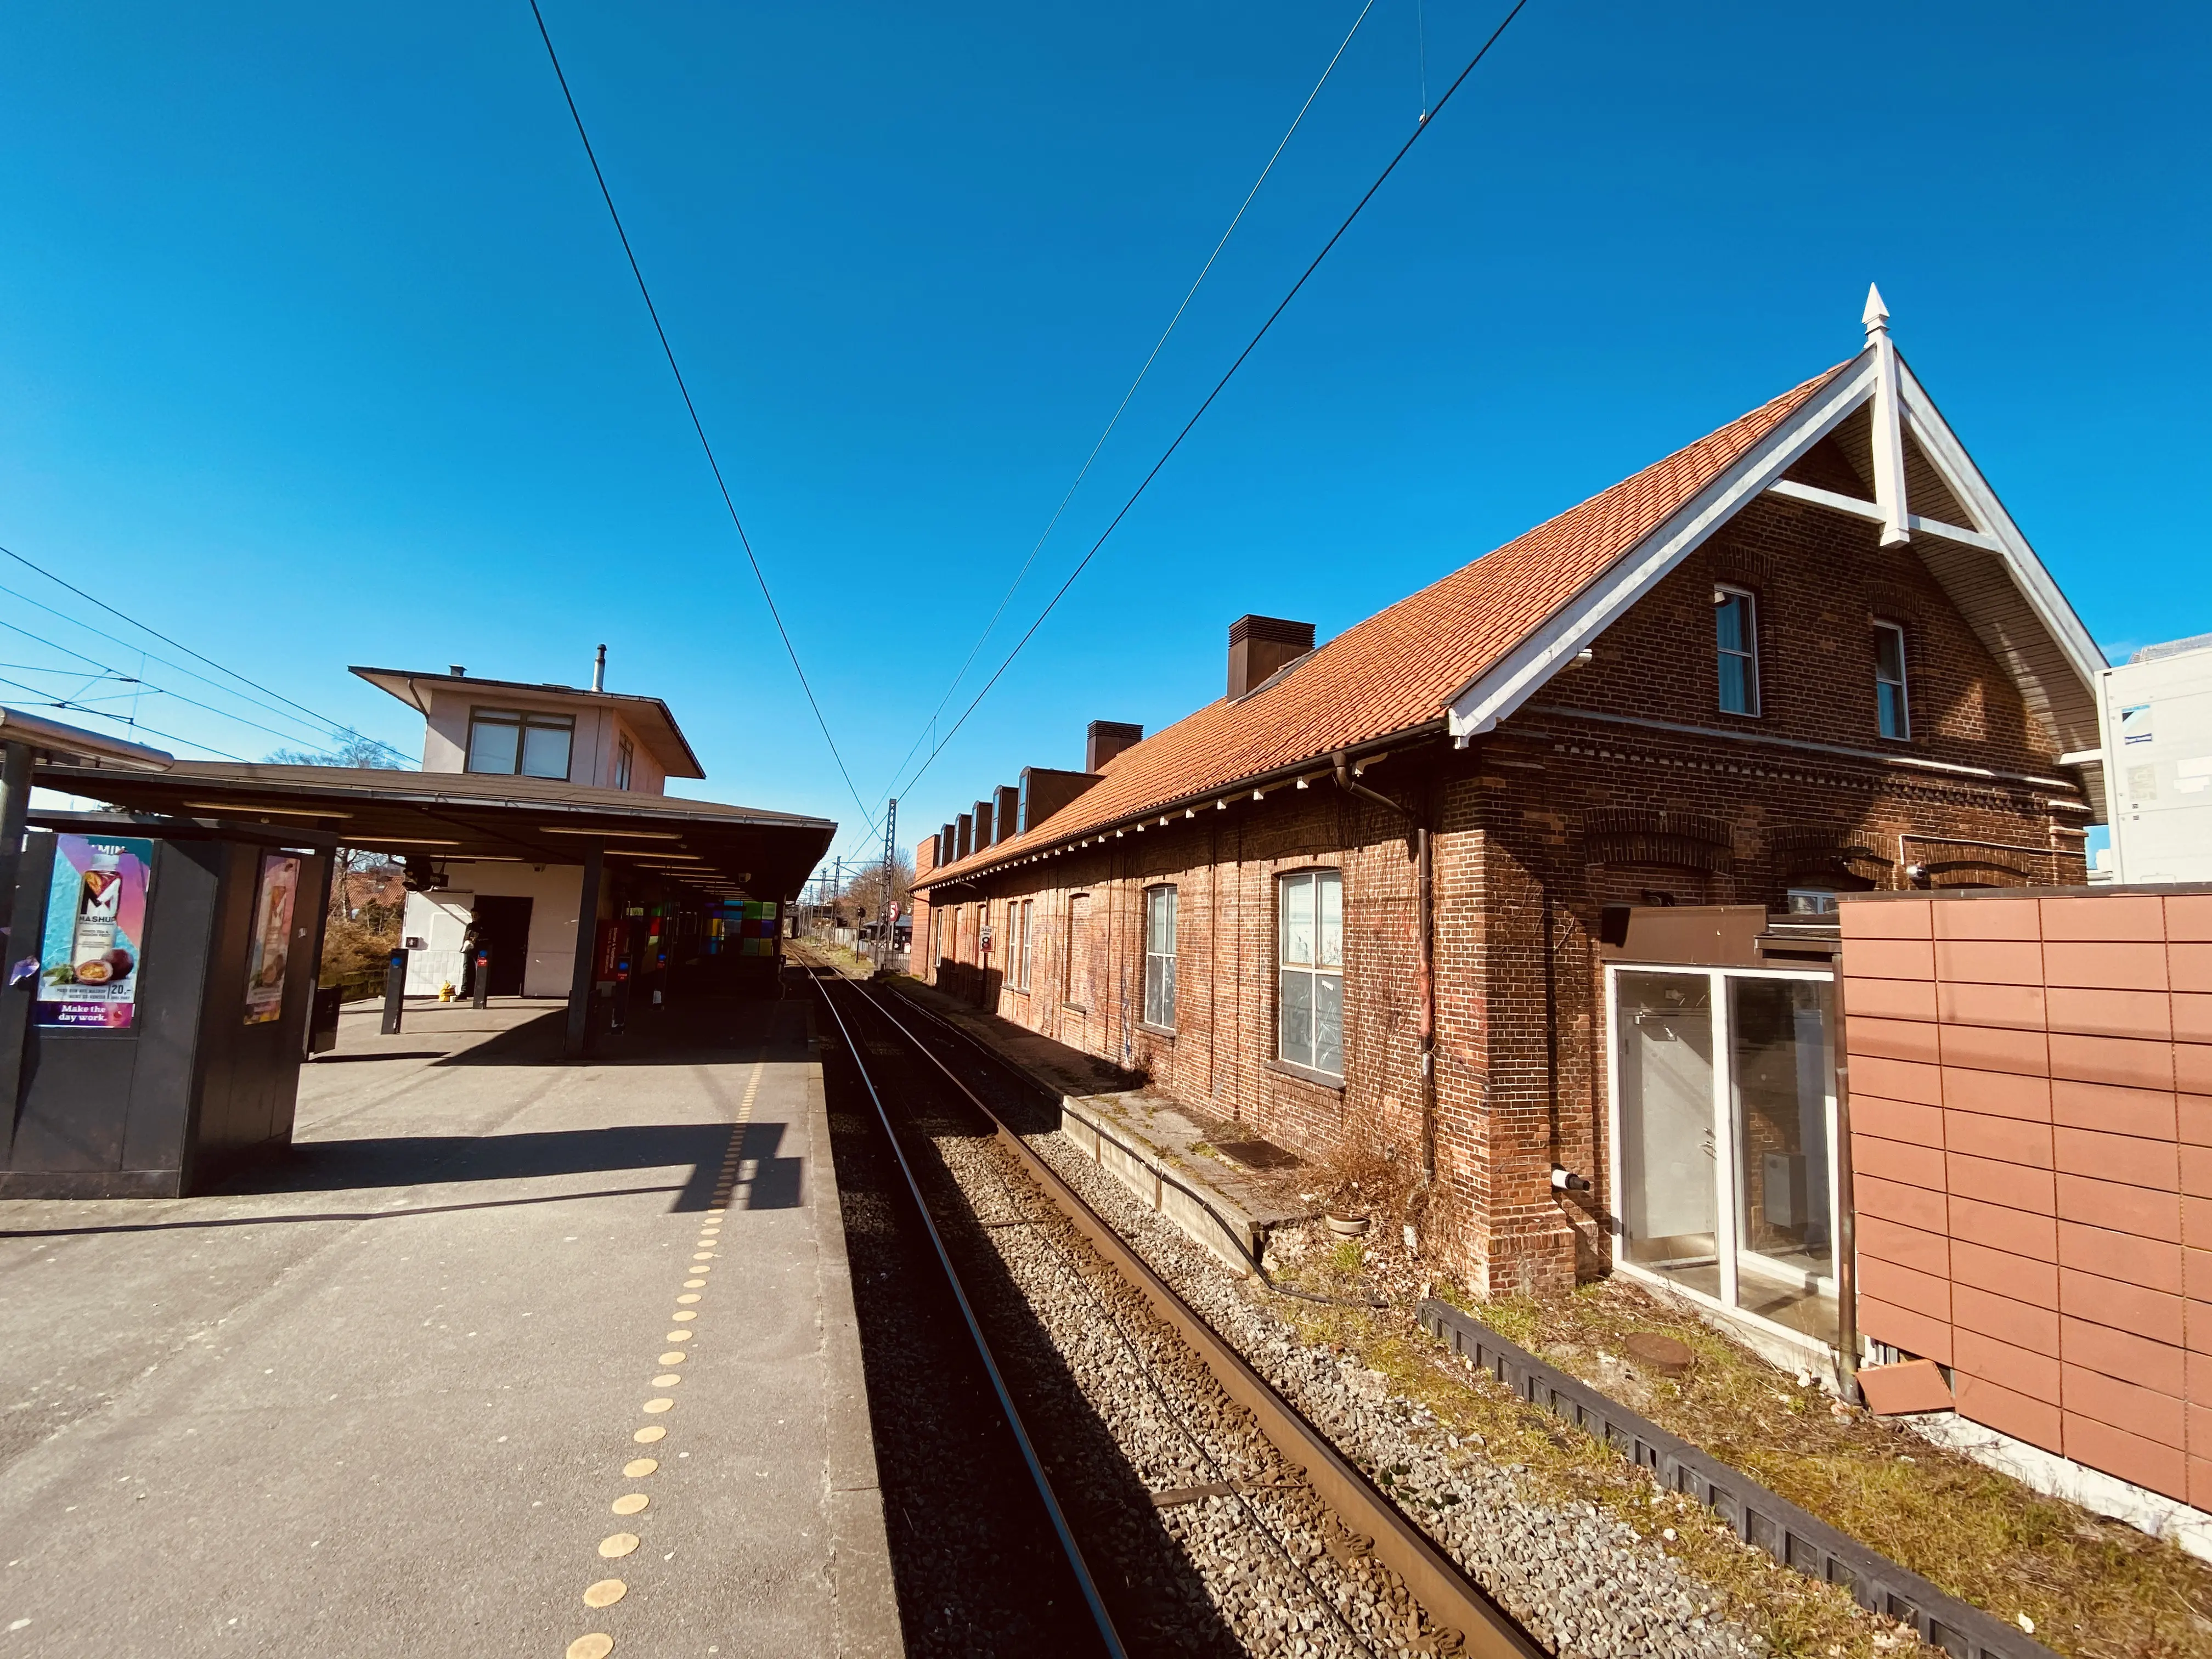 Billede af Herlev Station.